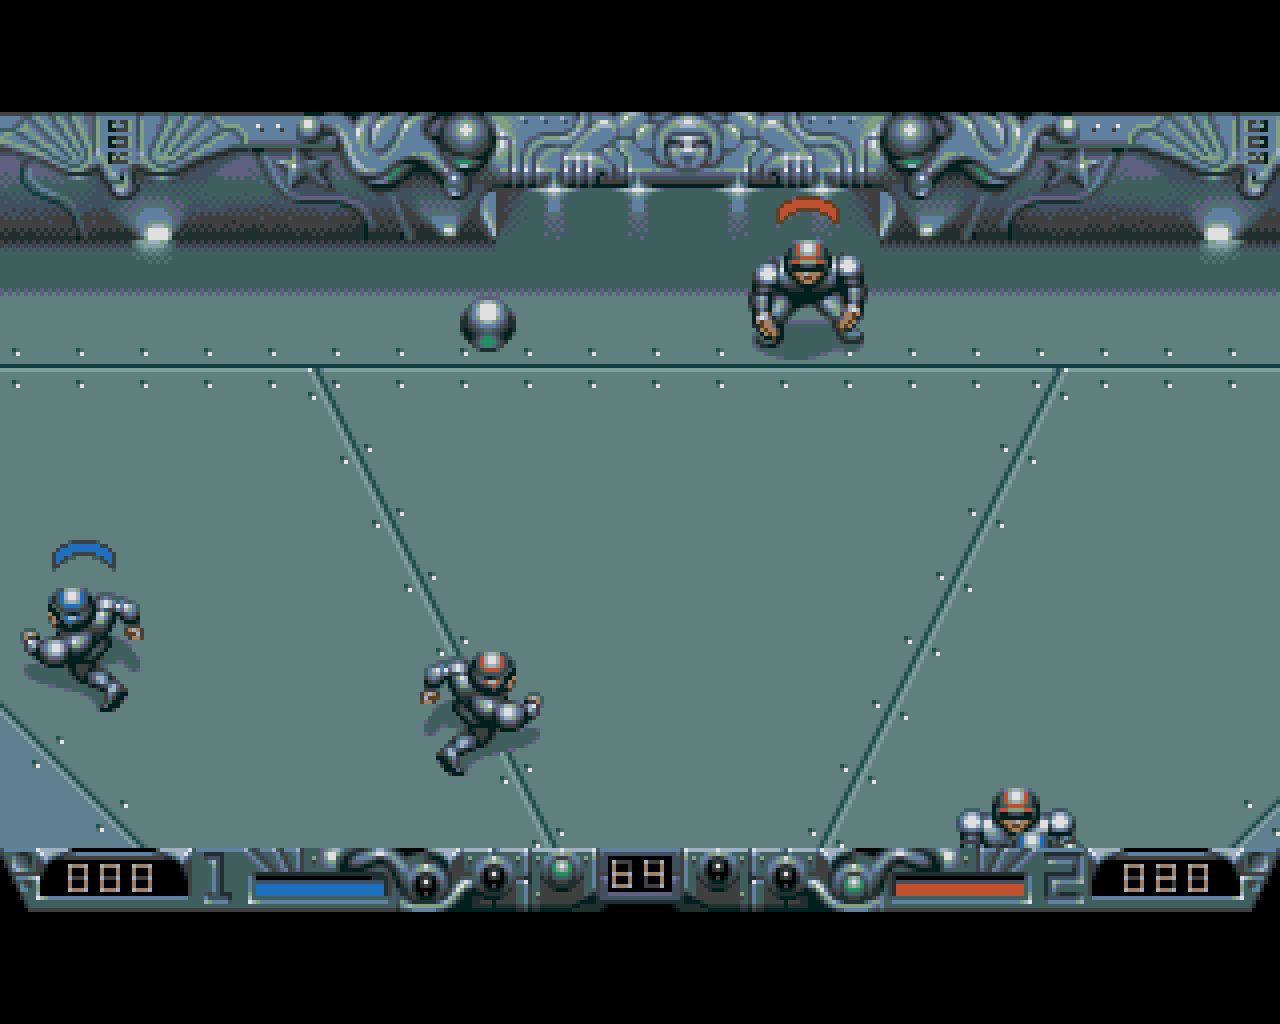 Speedball 2: Brutal Deluxe screenshot